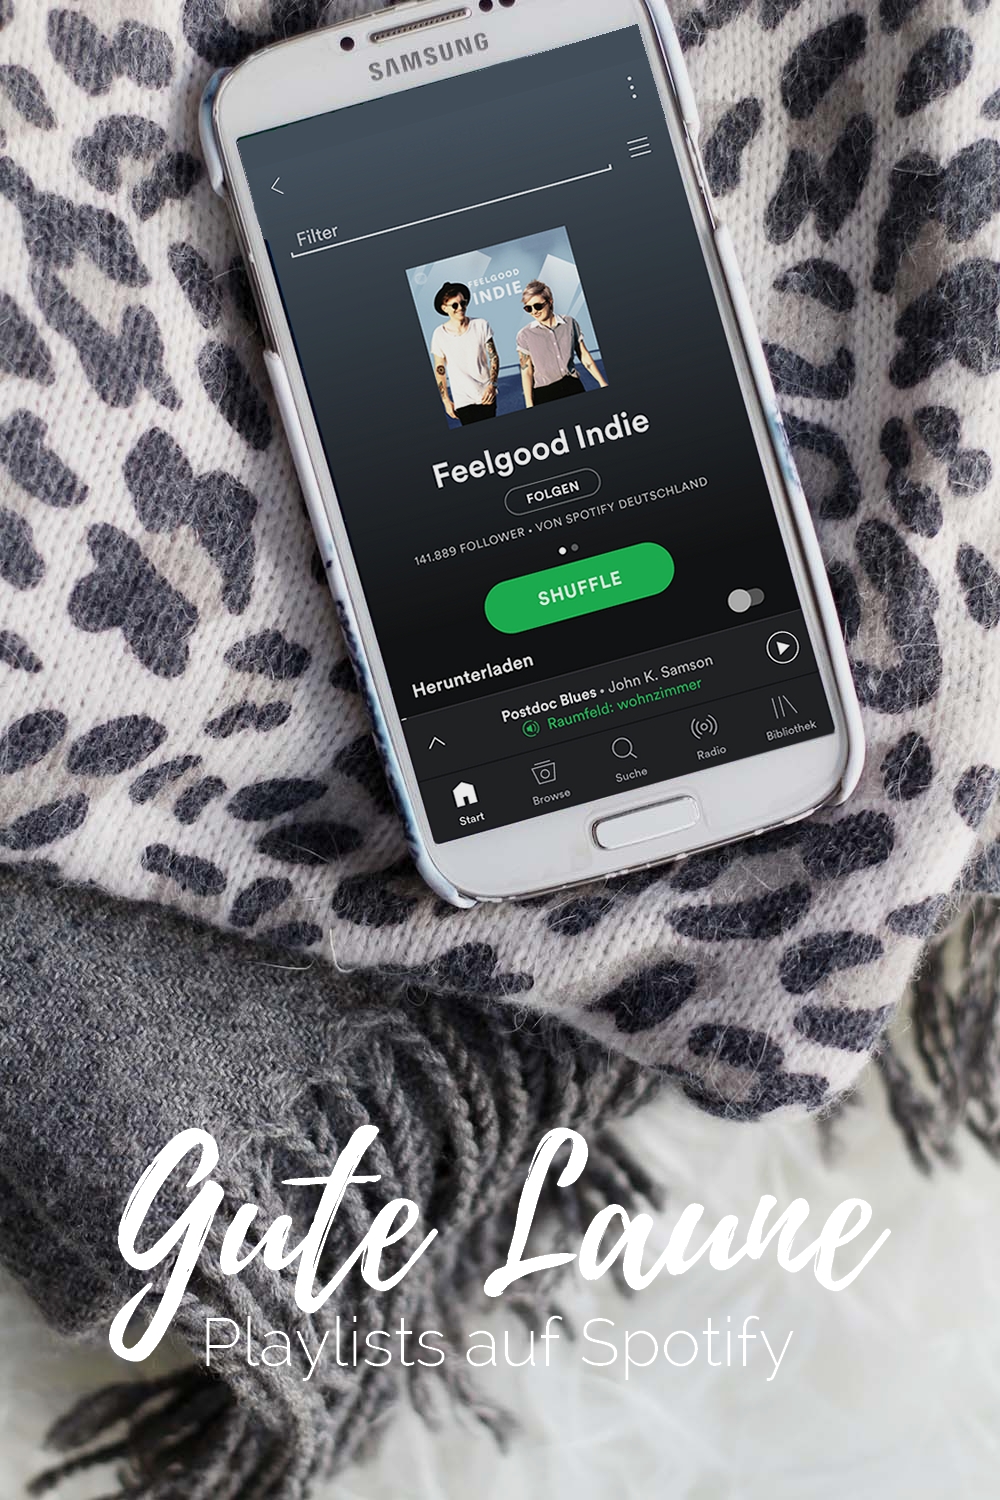 Meine liebsten Gute-Laune-Playlists auf Spotify